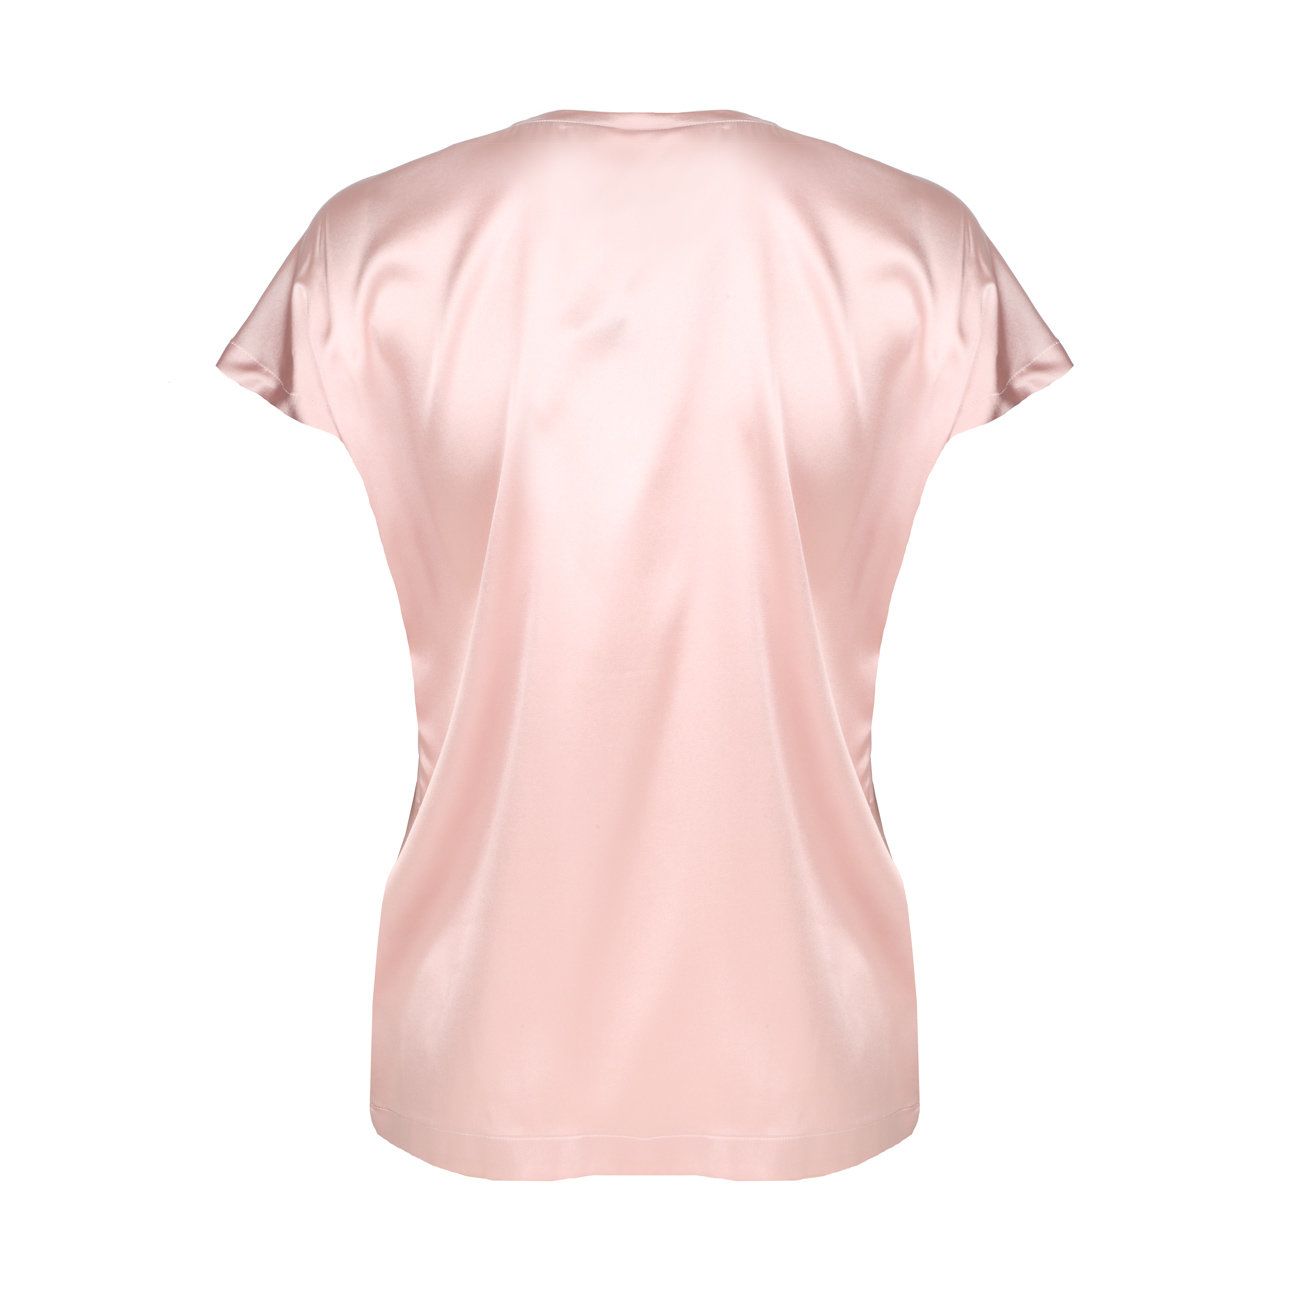 MODA DONNA Camicie & T-shirt Ricamato sconto 93% NoName Top corto Rosa S 